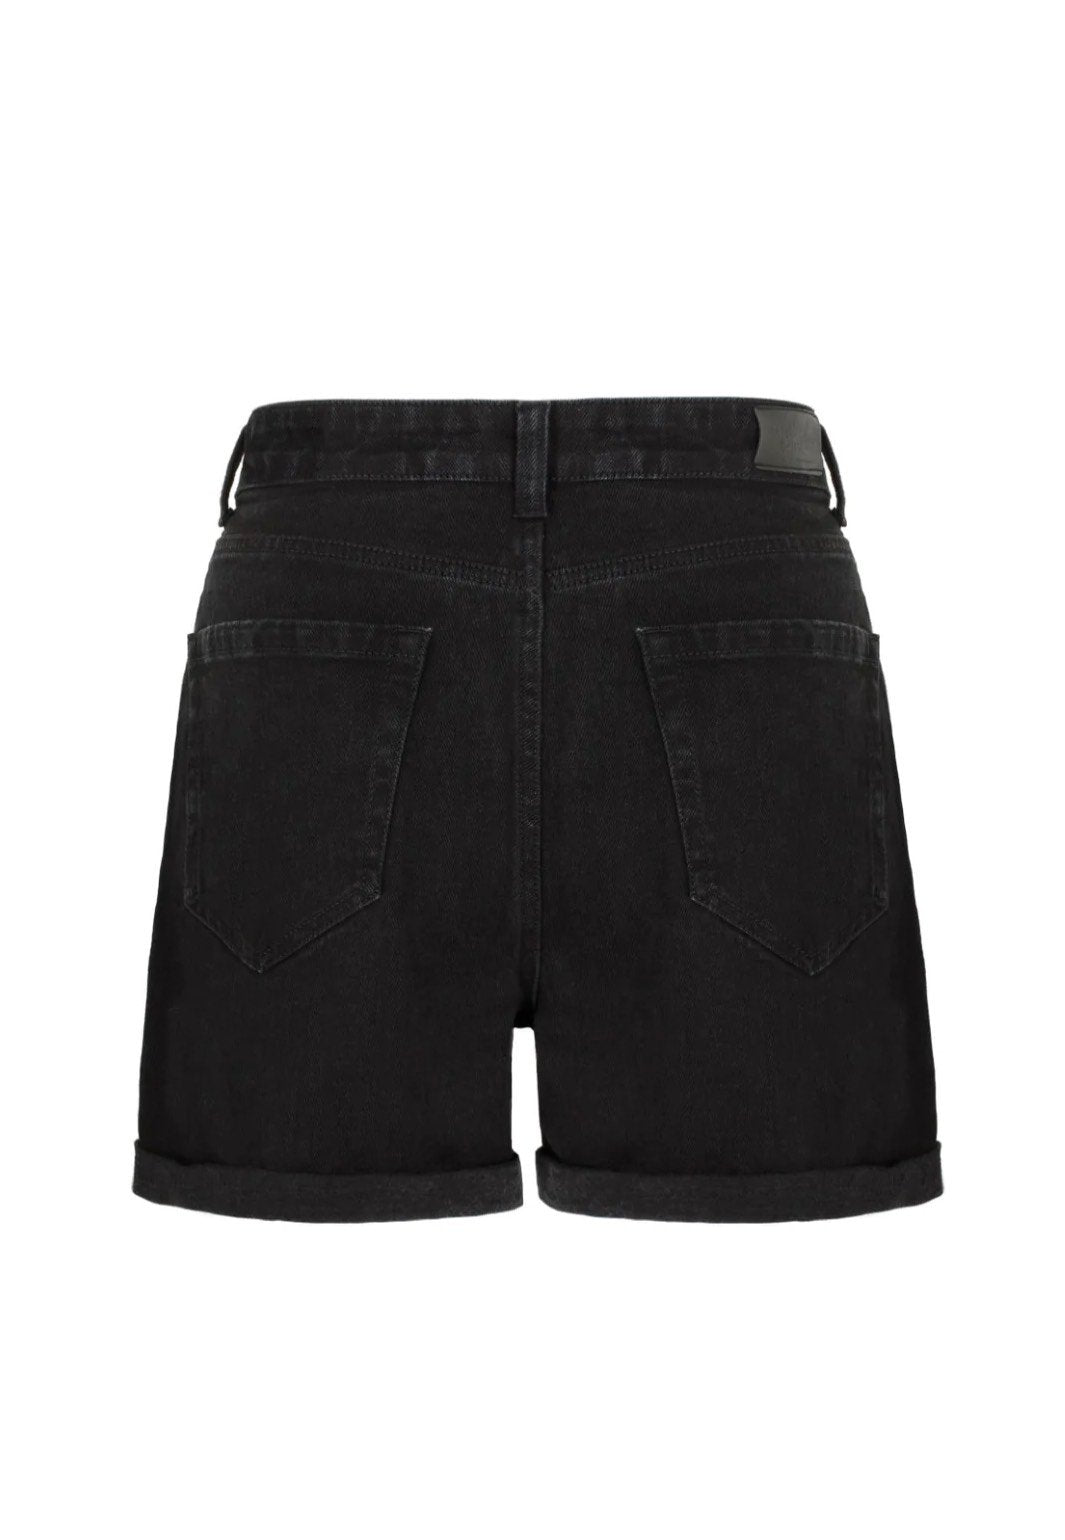 Hellbunny - Arania Black - Shorts